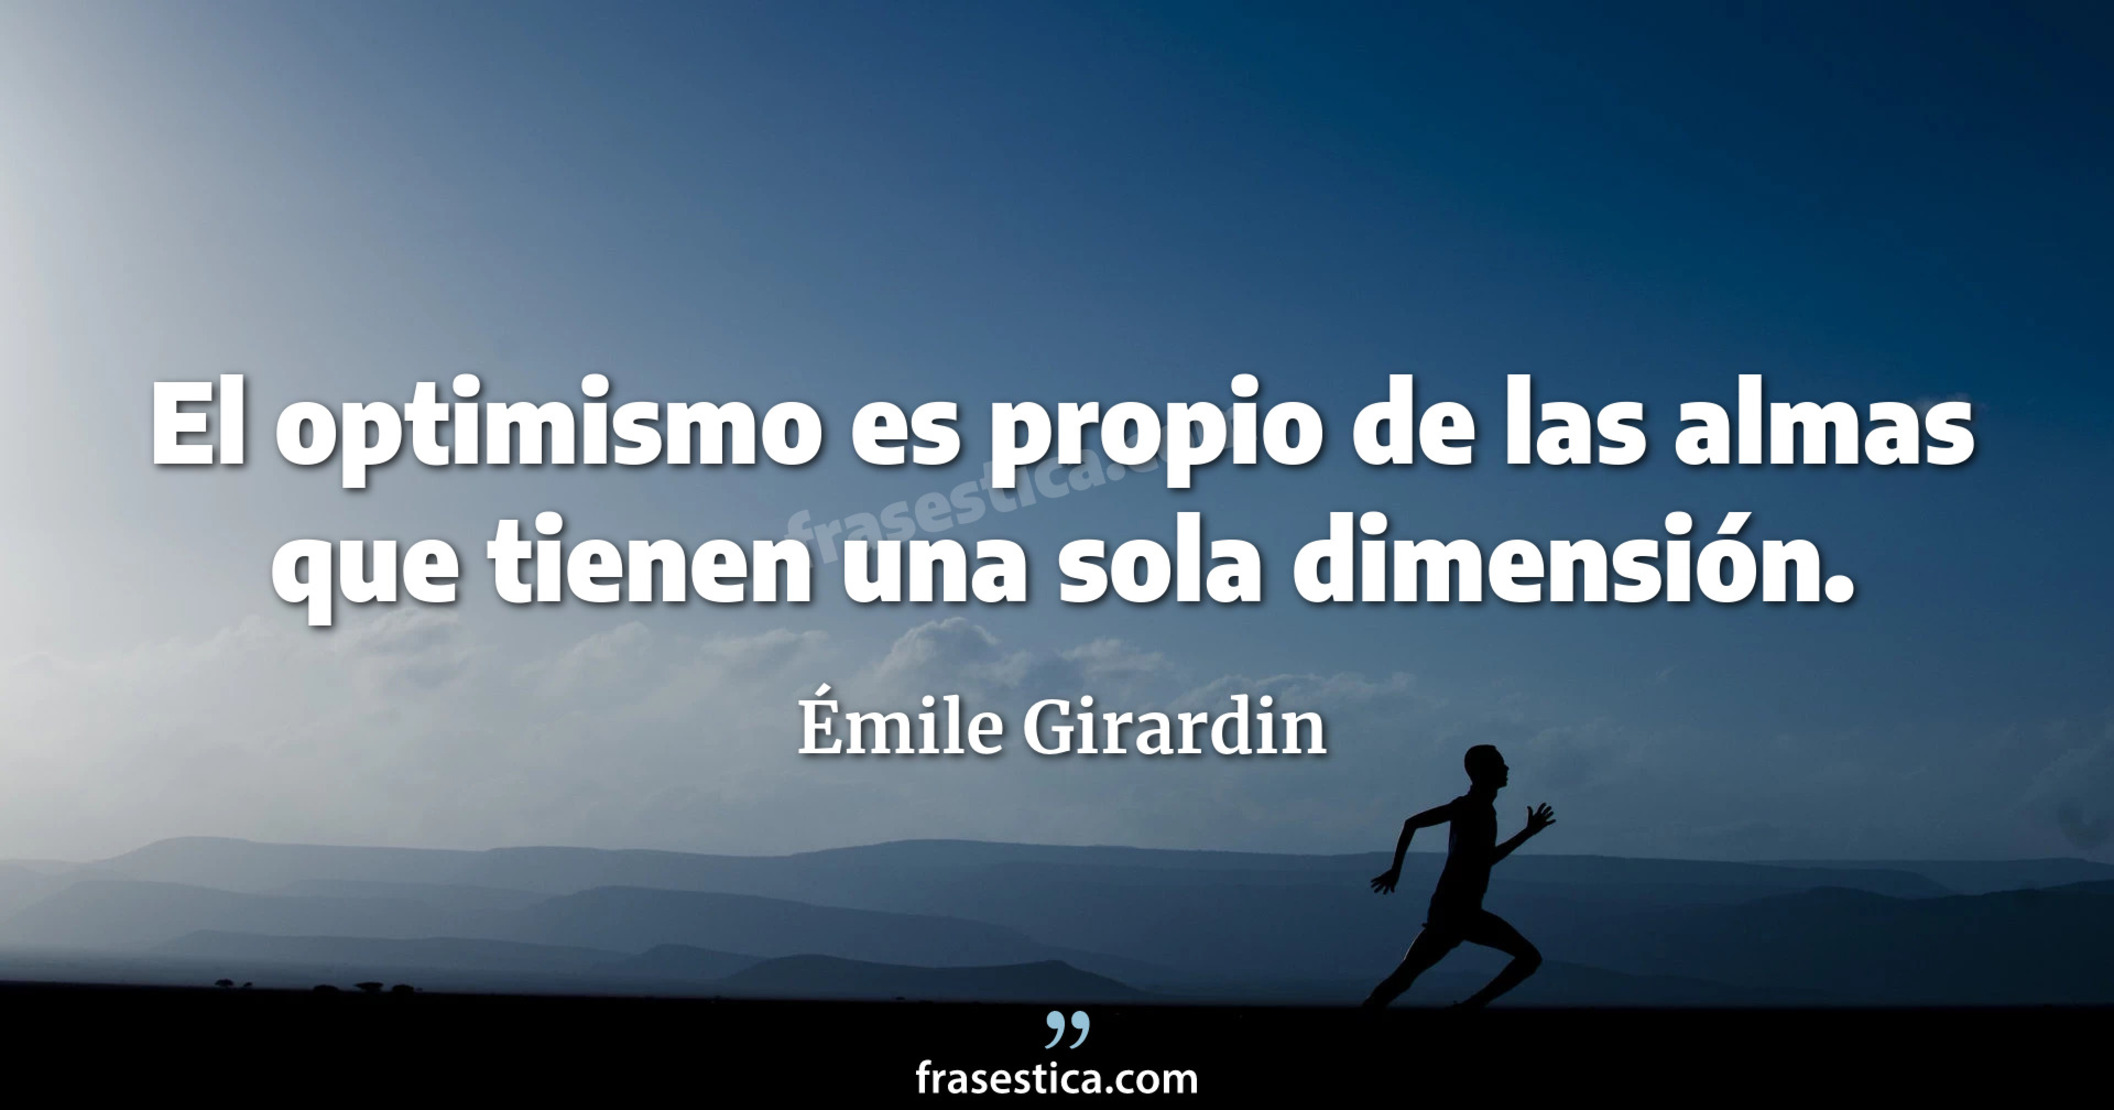 El optimismo es propio de las almas que tienen una sola dimensión. - Émile Girardin